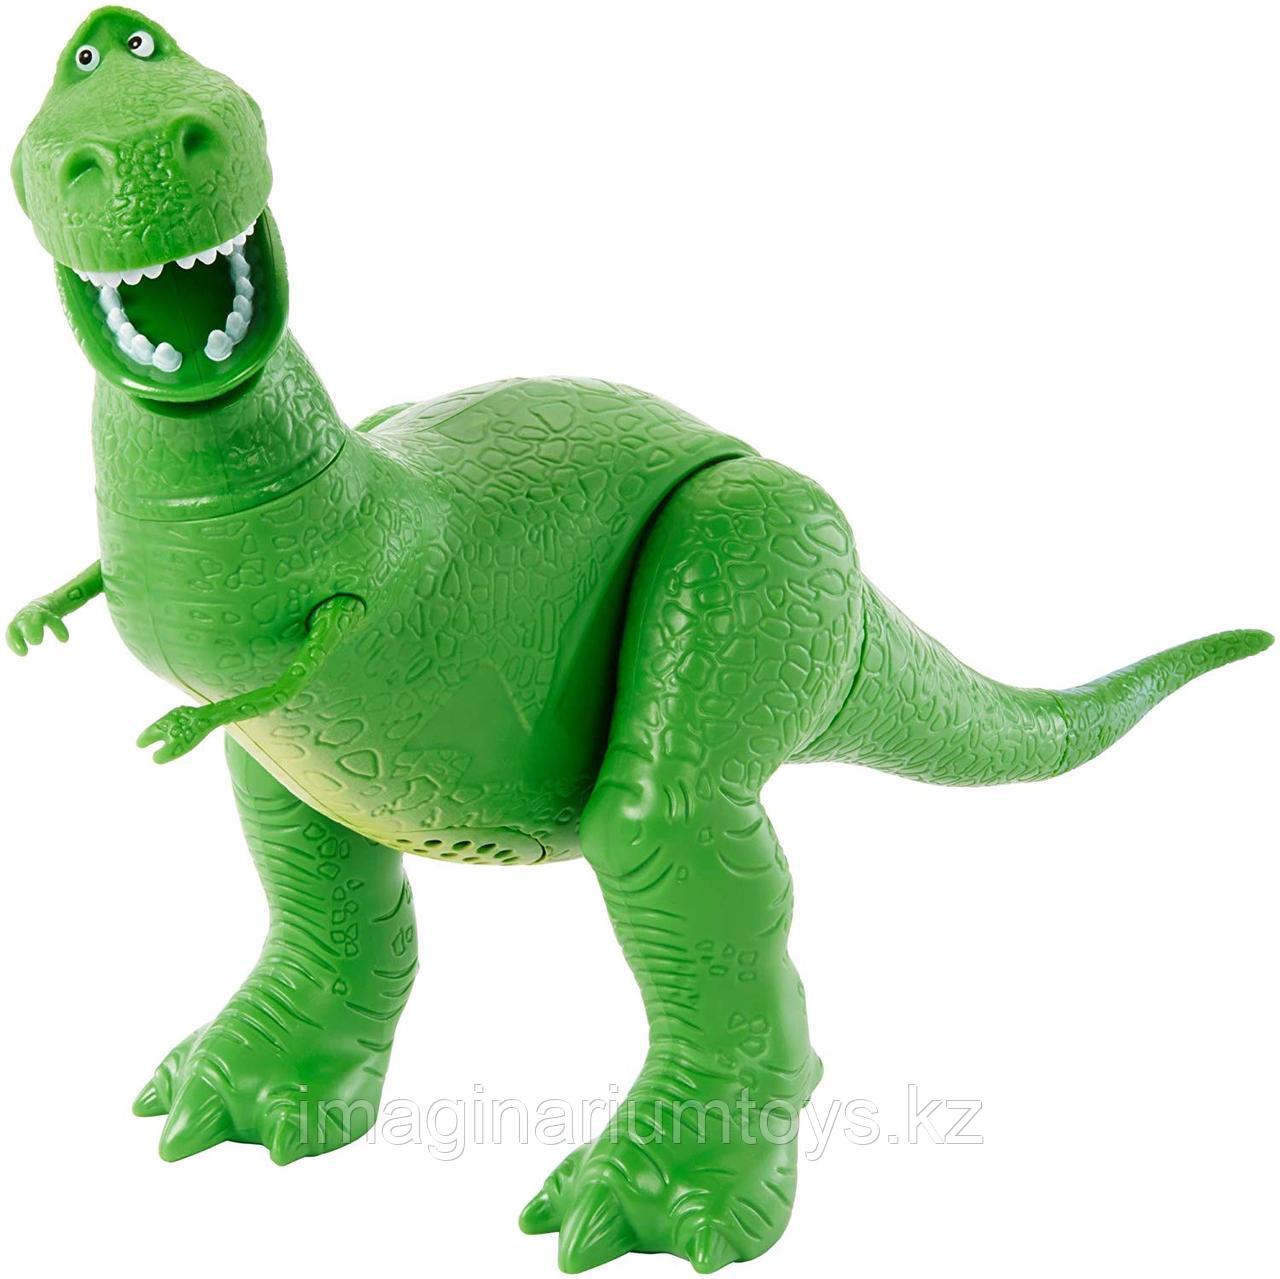 Динозавр Рекс говорящий из м/ф «История игрушек», фото 1